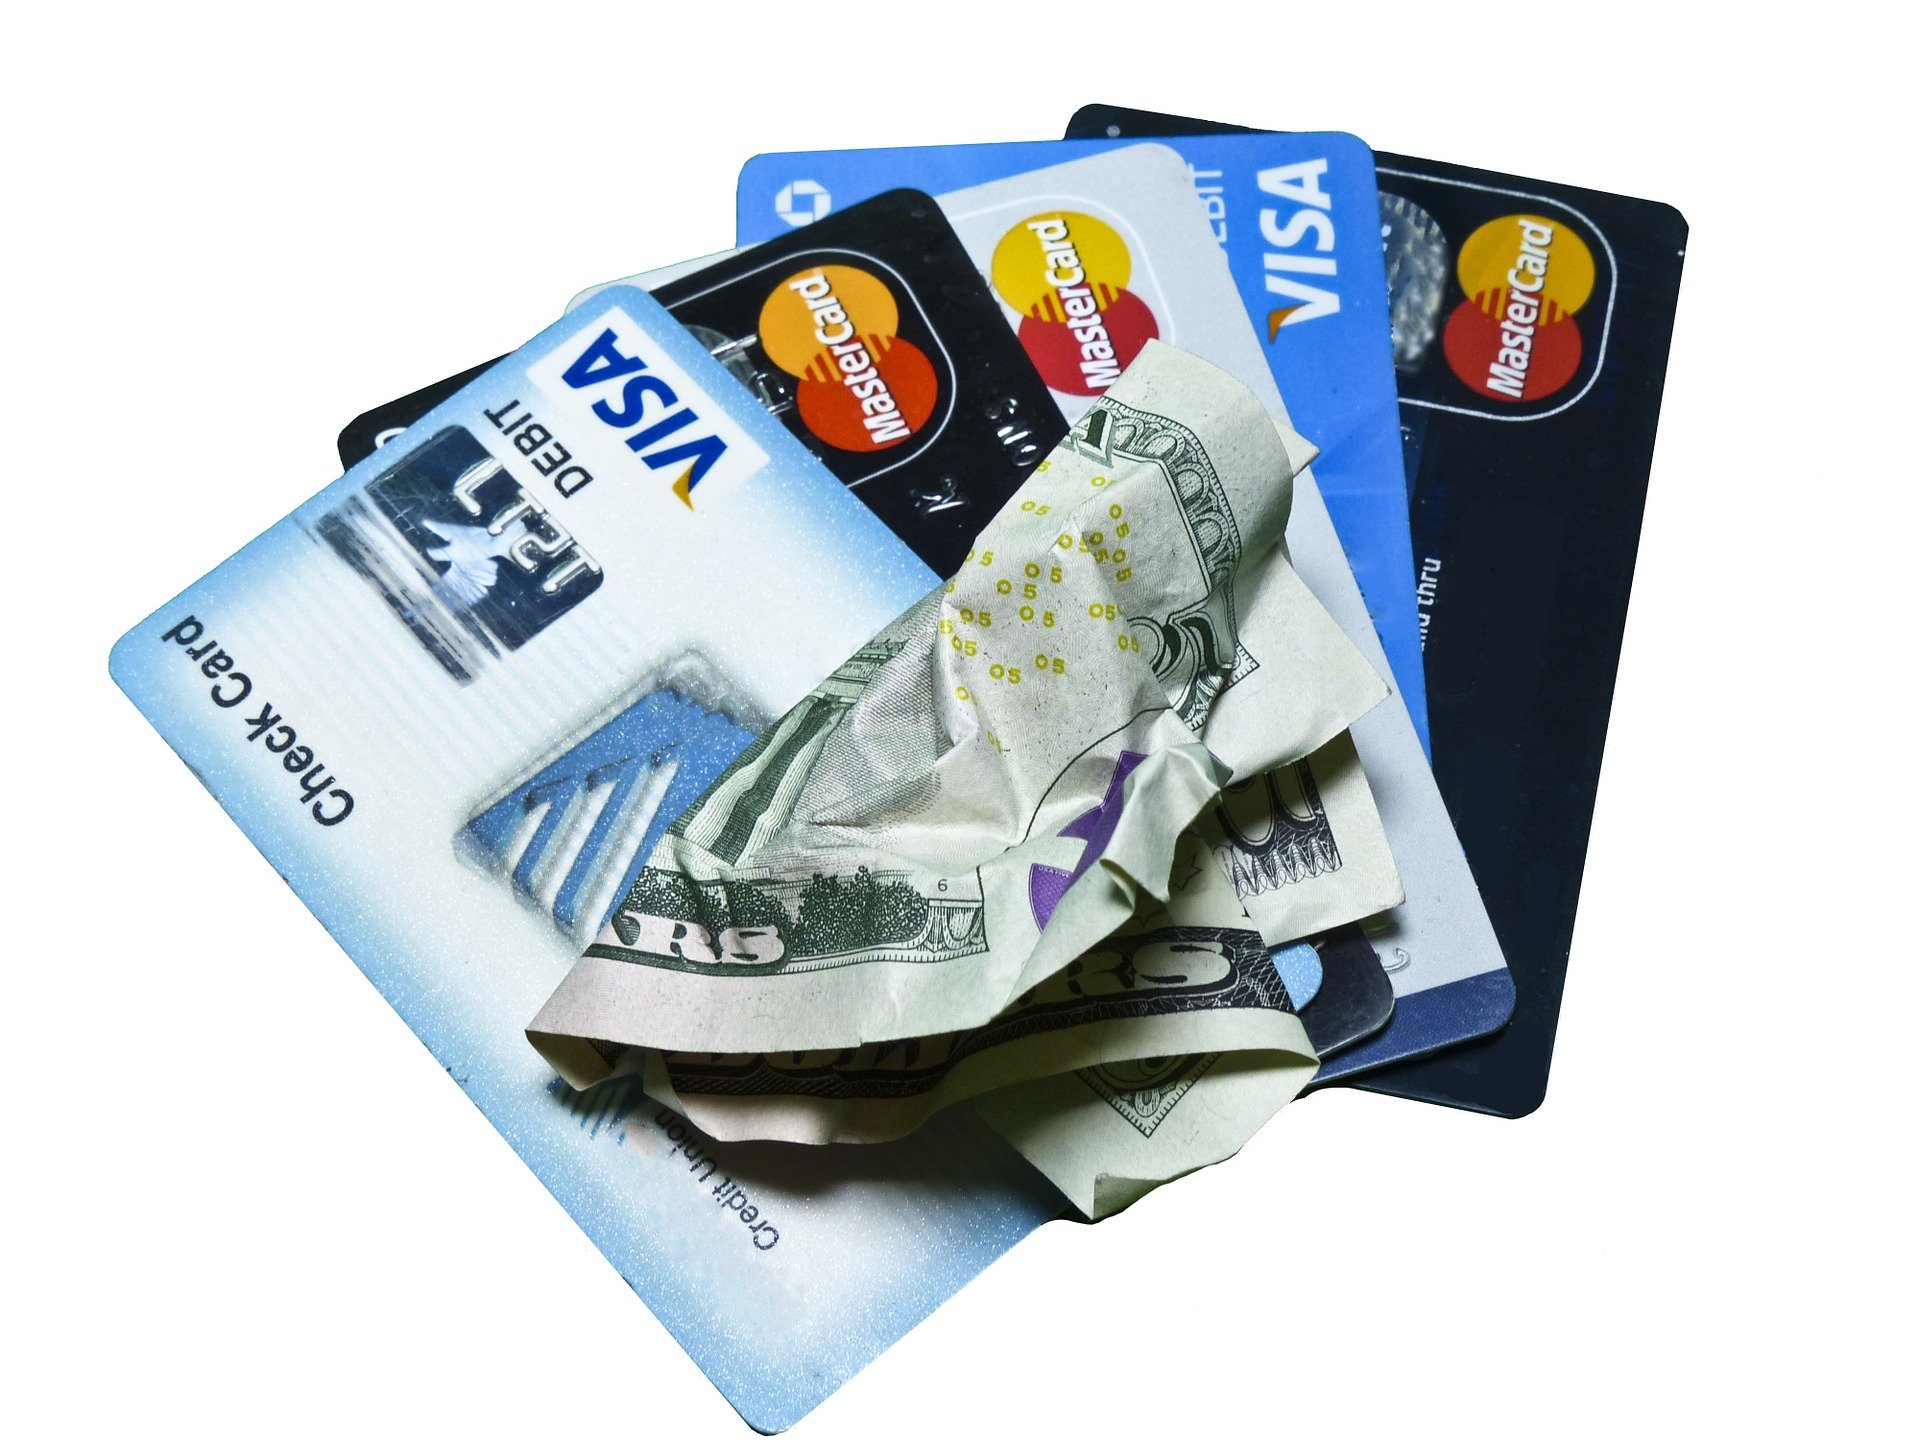 Cartão de Crédito: Conheça os benefícios e os perigos deste serviço